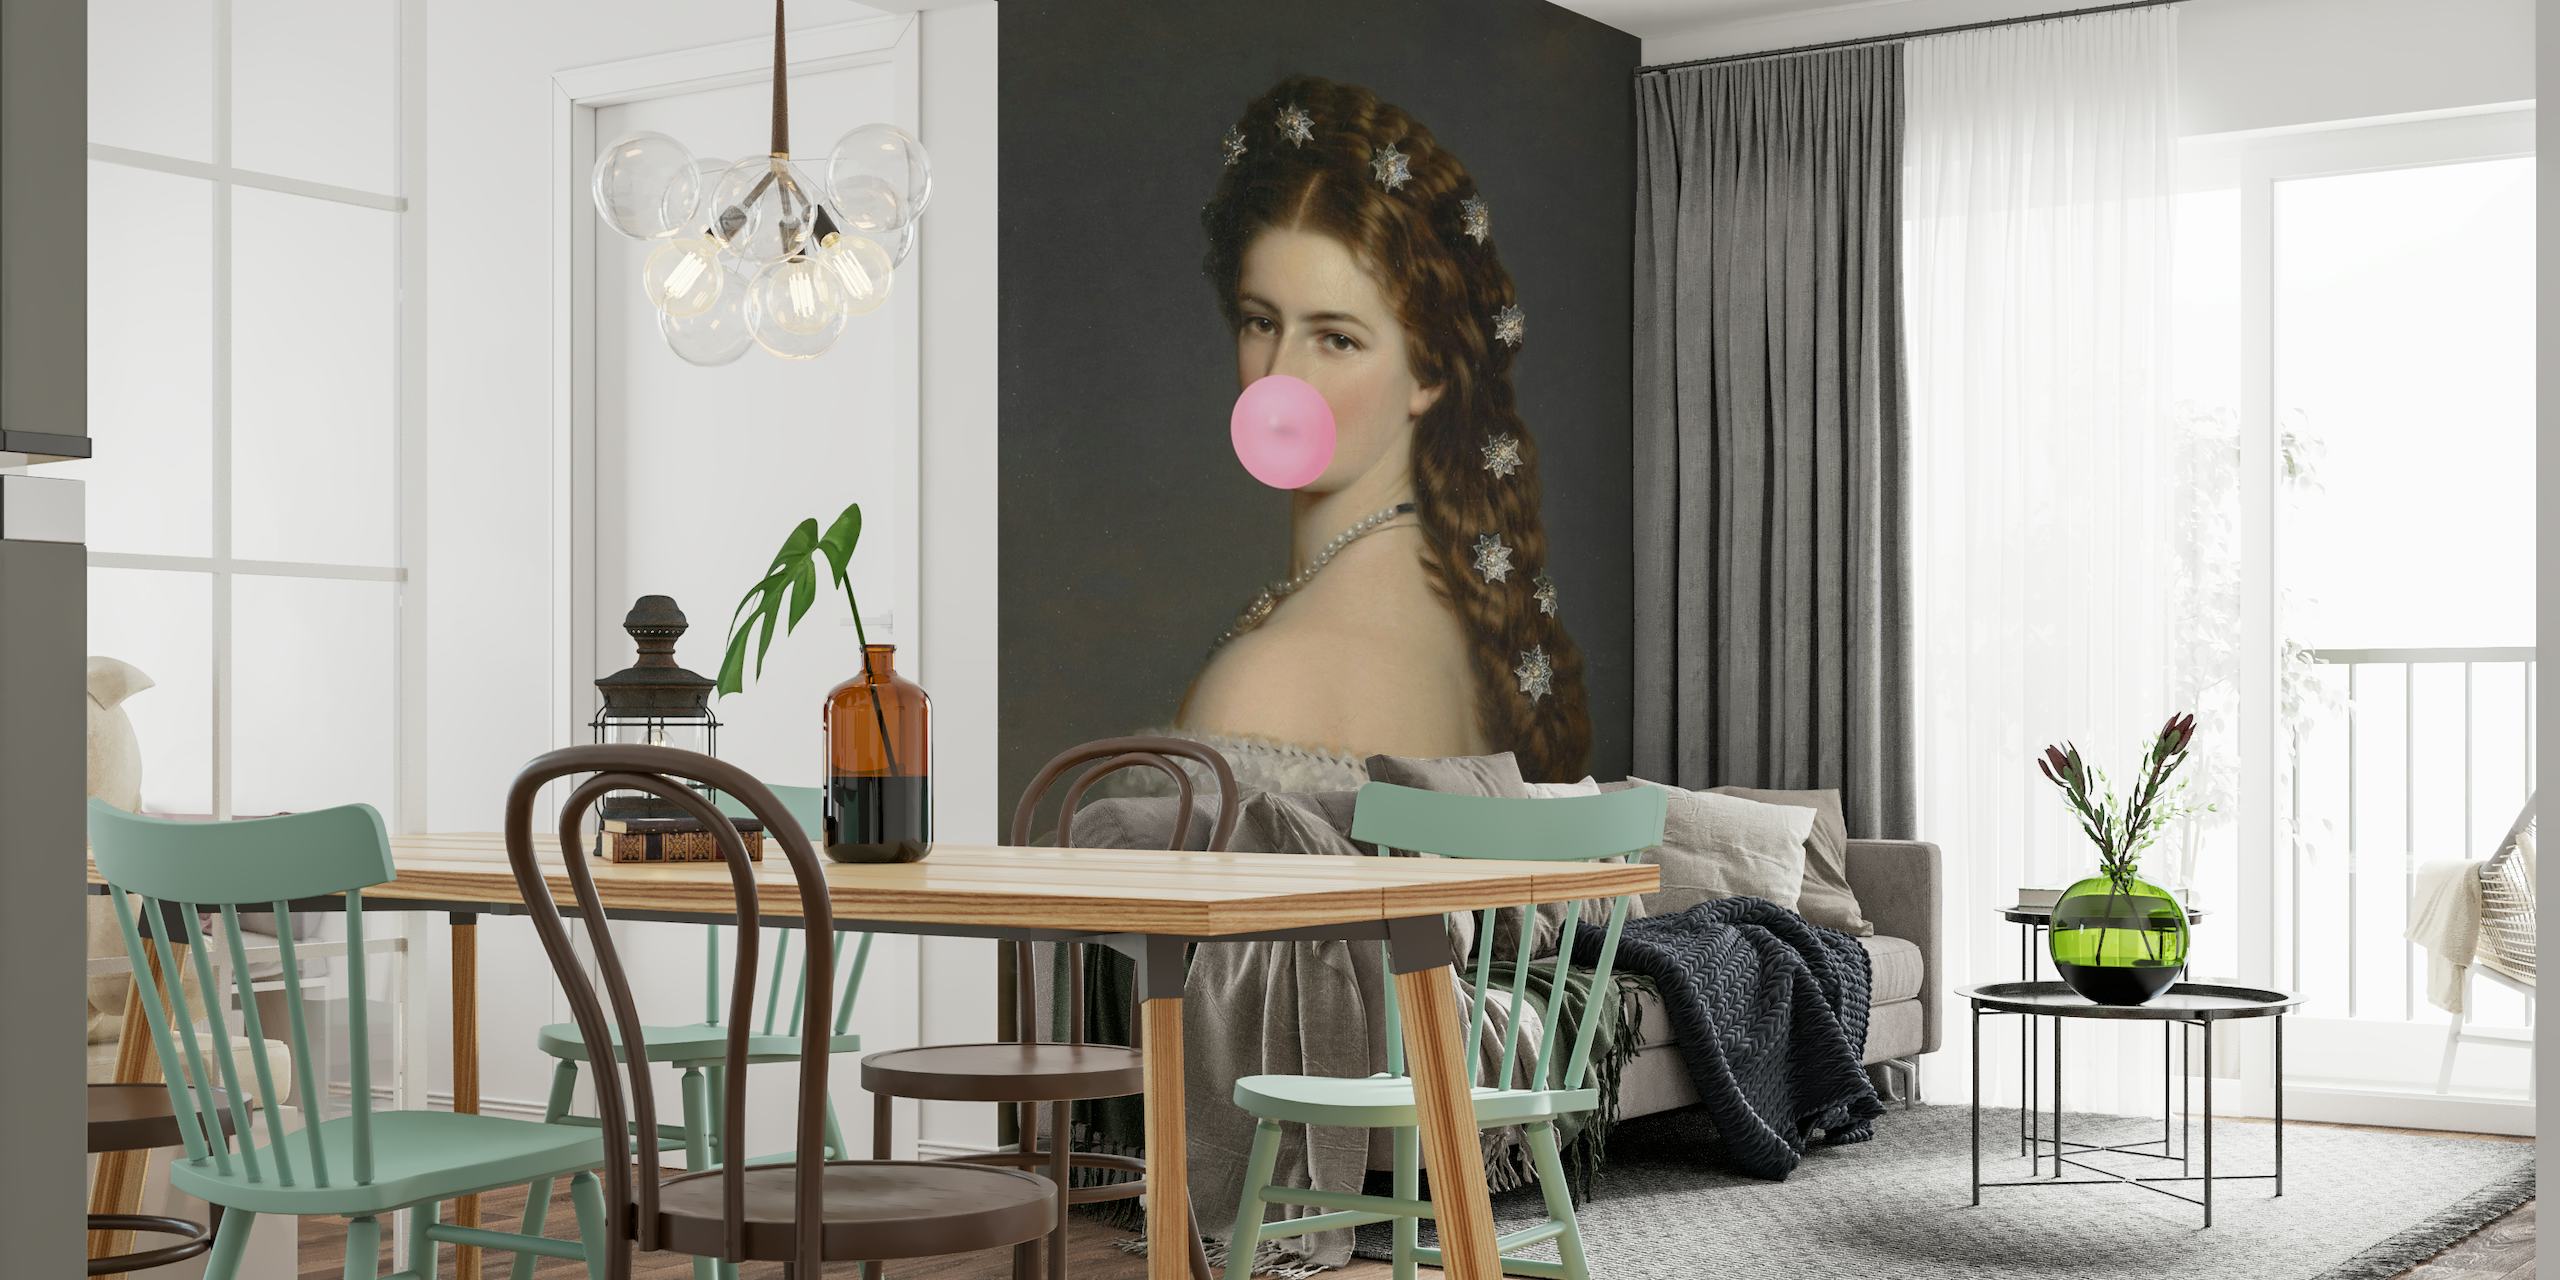 Papier peint mural de l'impératrice Sissi soufflant une bulle de bubble-gum, rencontre entre classique et design décalé